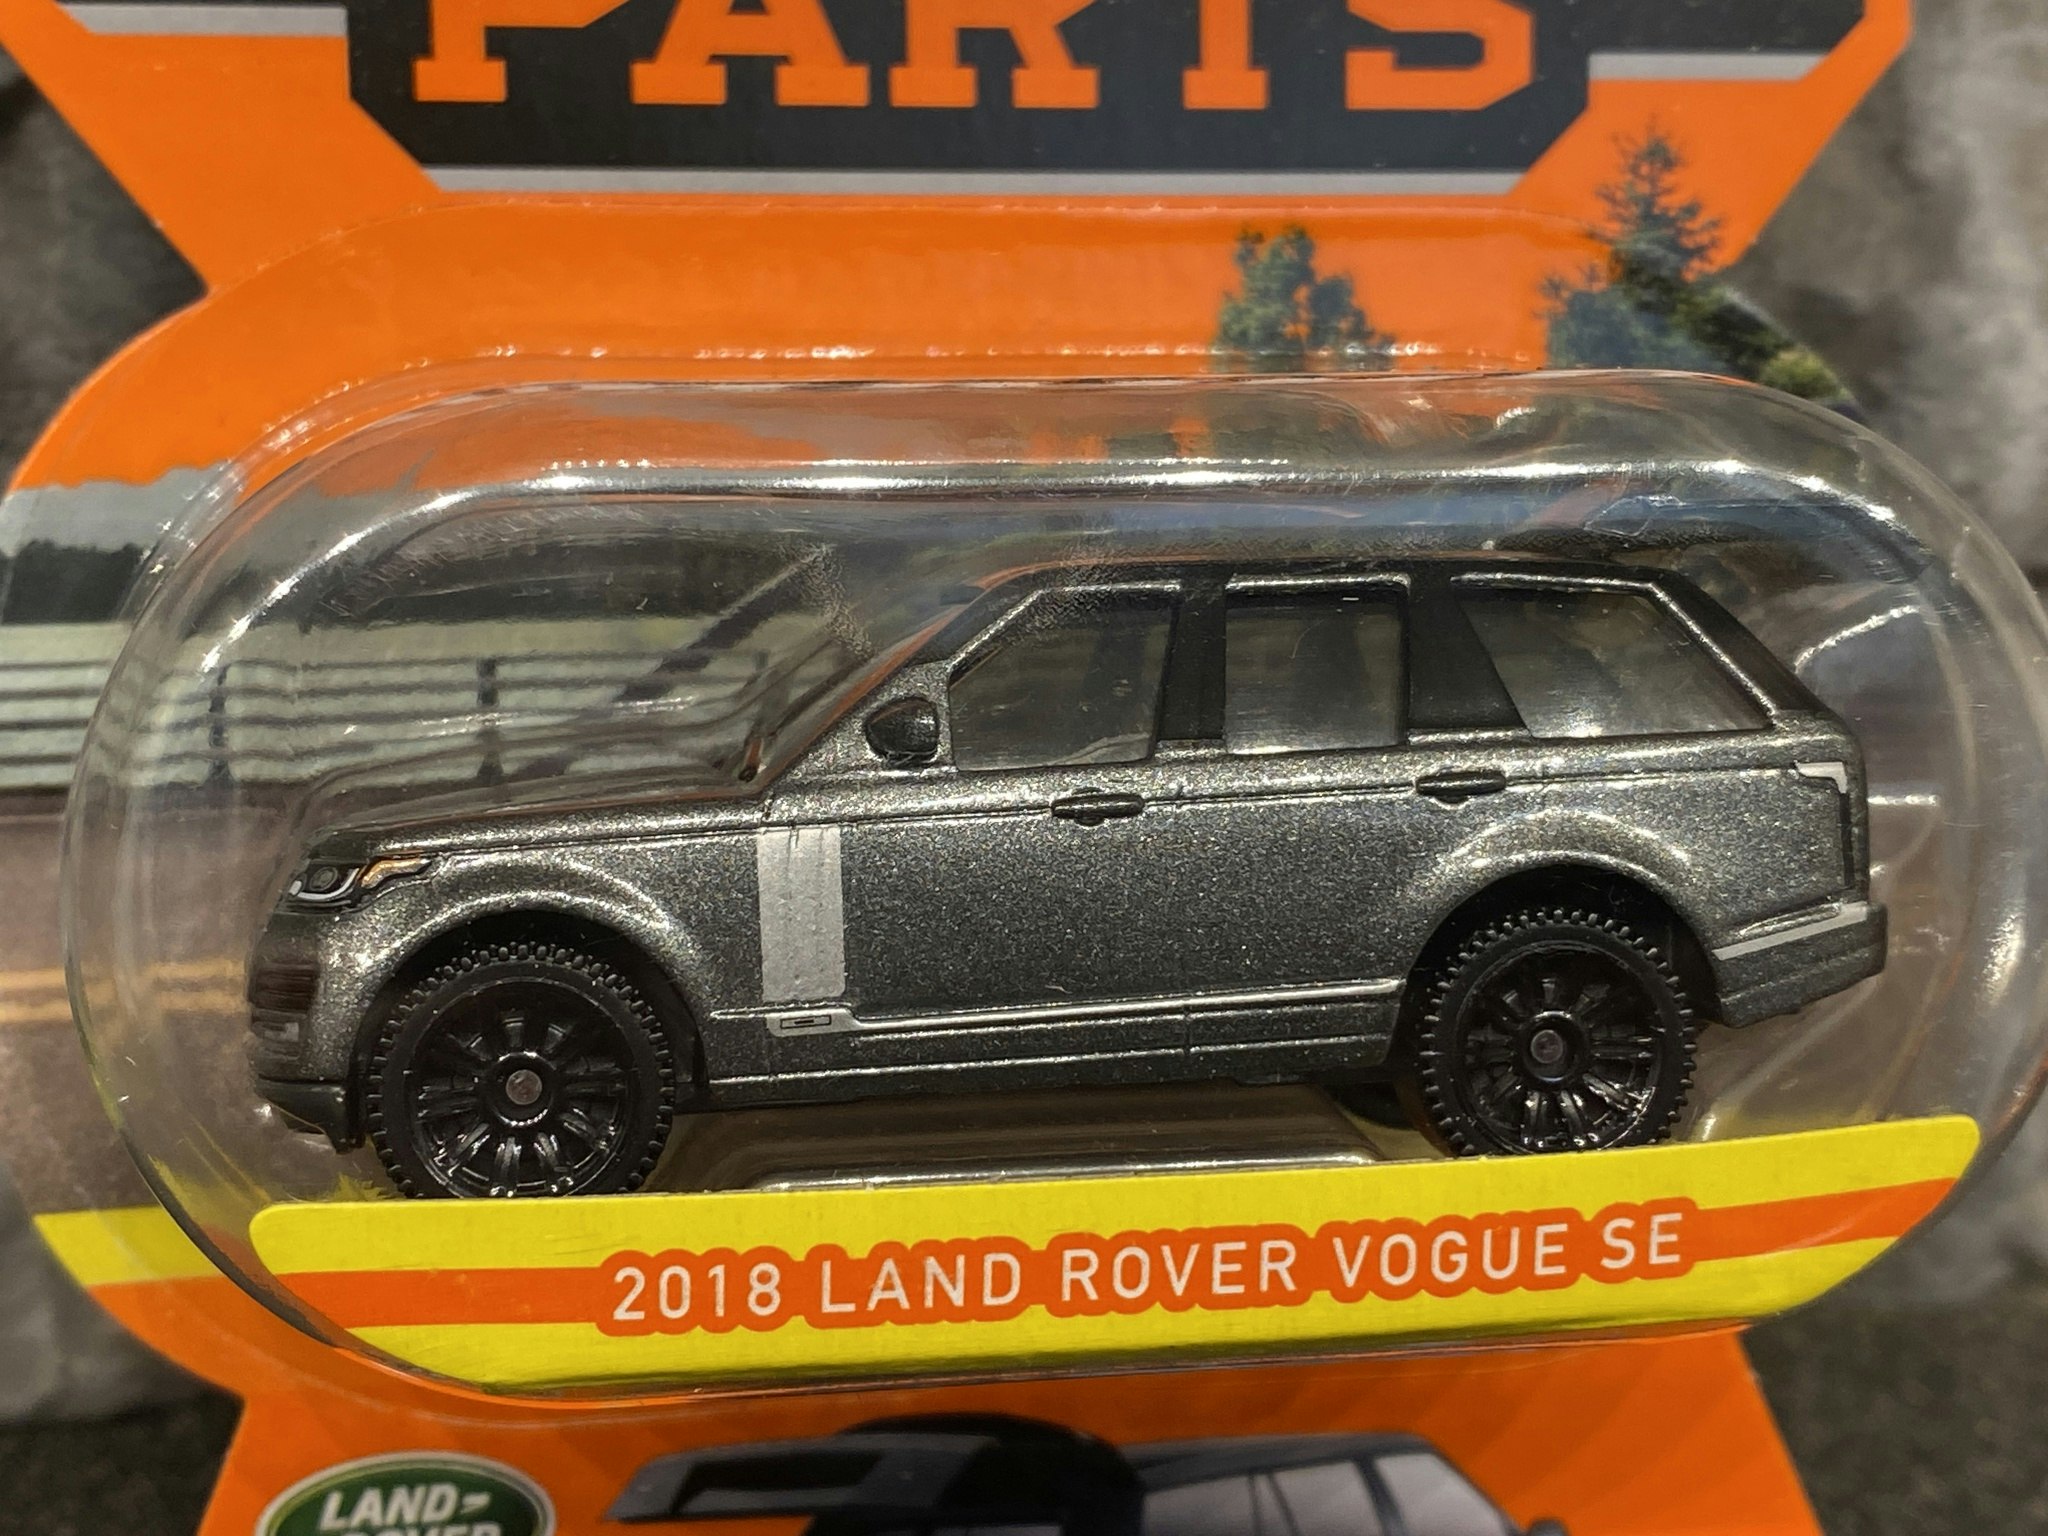 Skala 1/64 Matchbox "Moving parts" - Land Rover Vouge SE 2018'